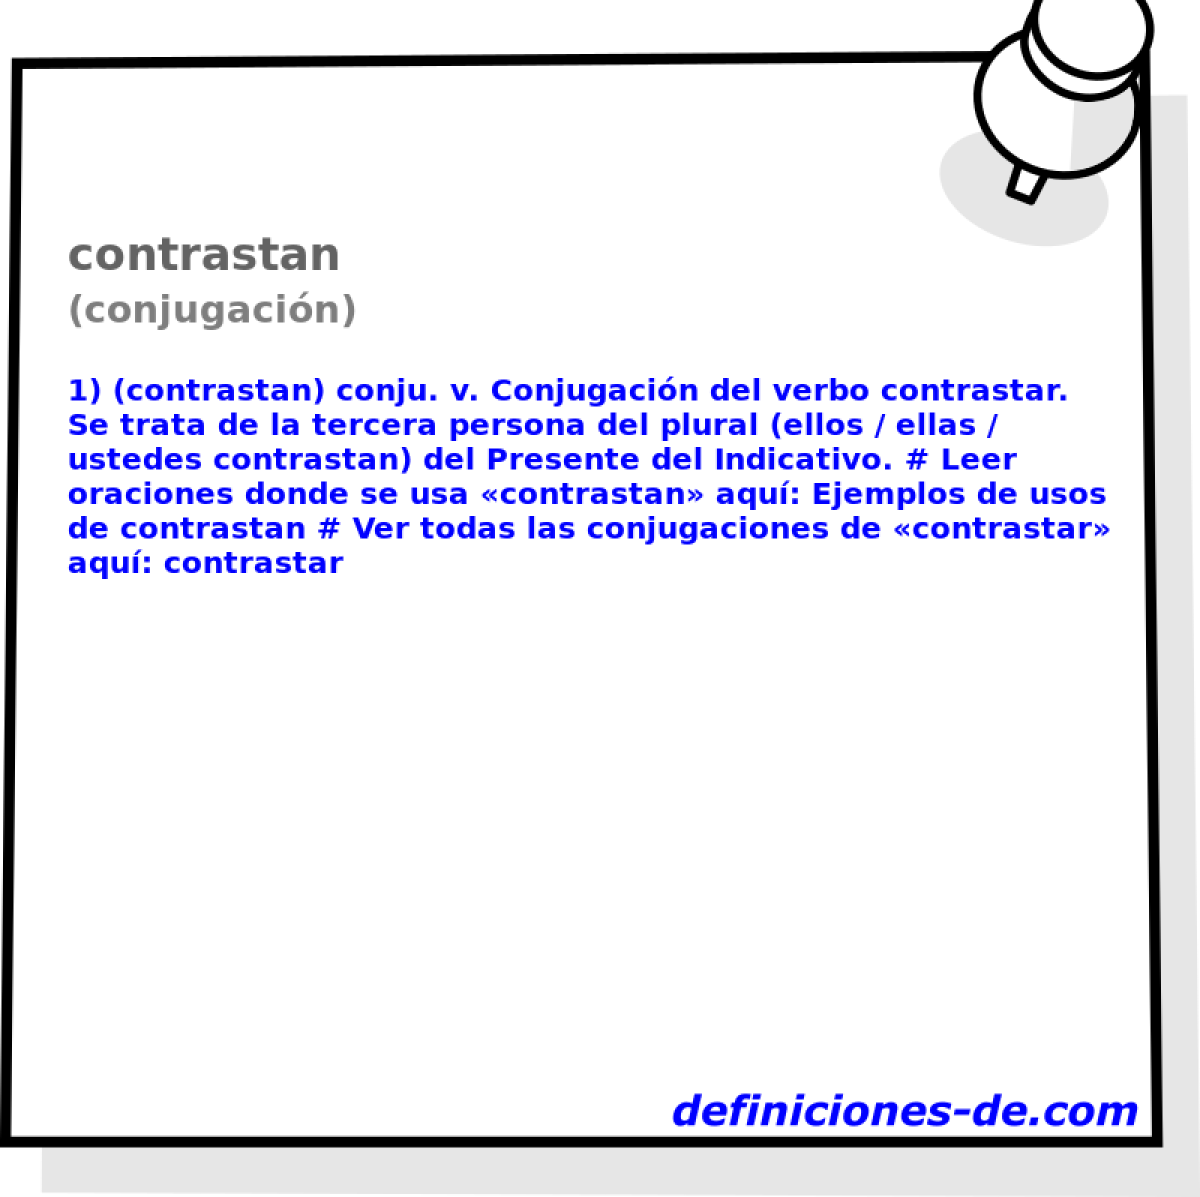 contrastan (conjugacin)